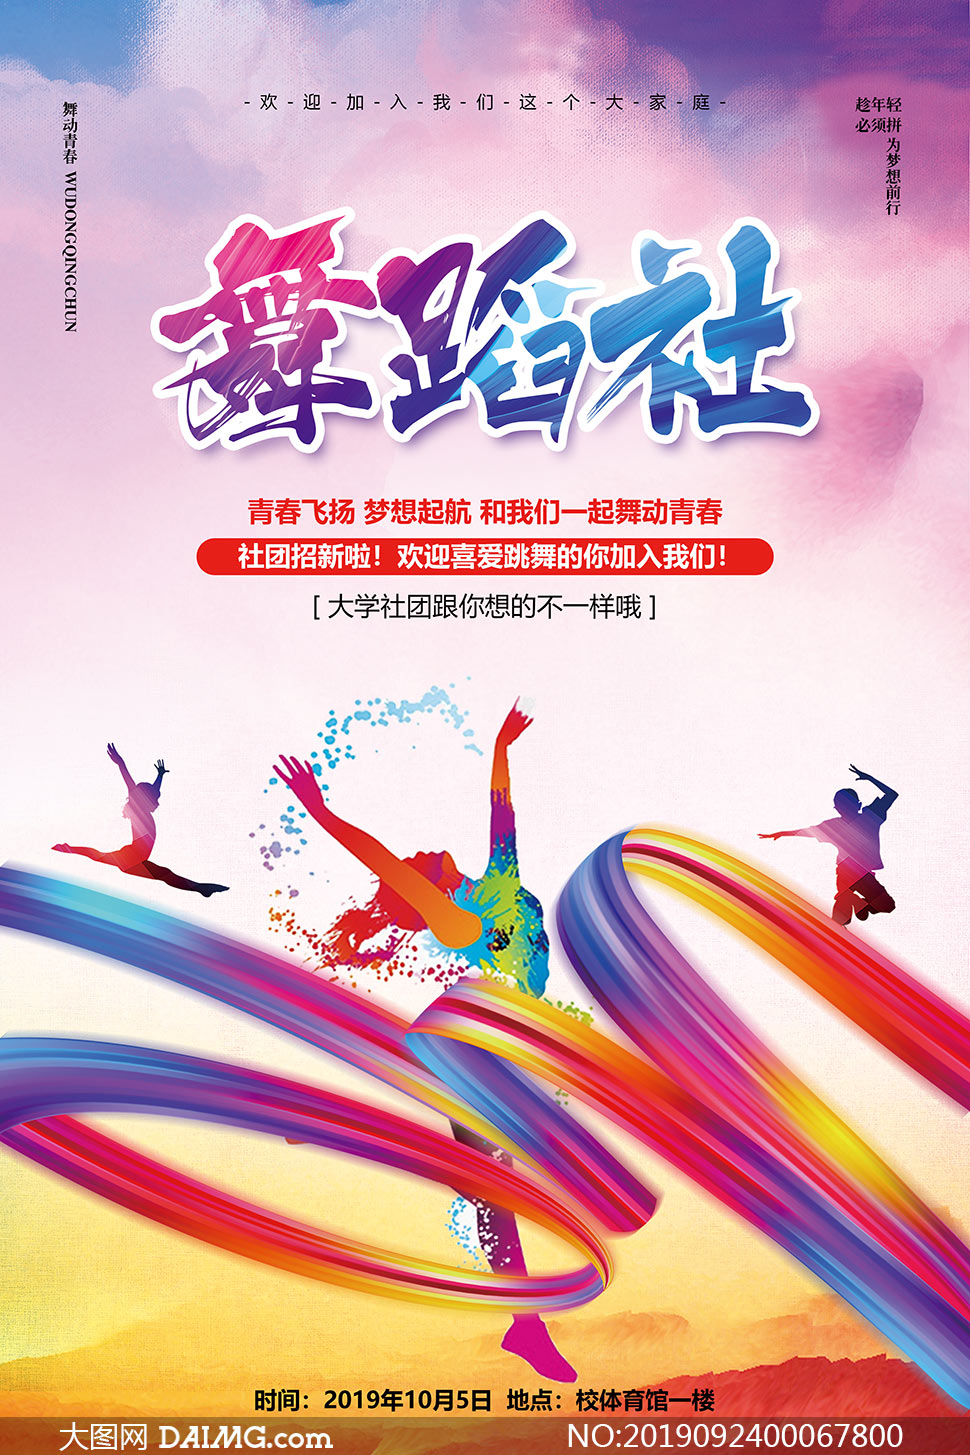 校园舞蹈社团招新海报设计psd素材